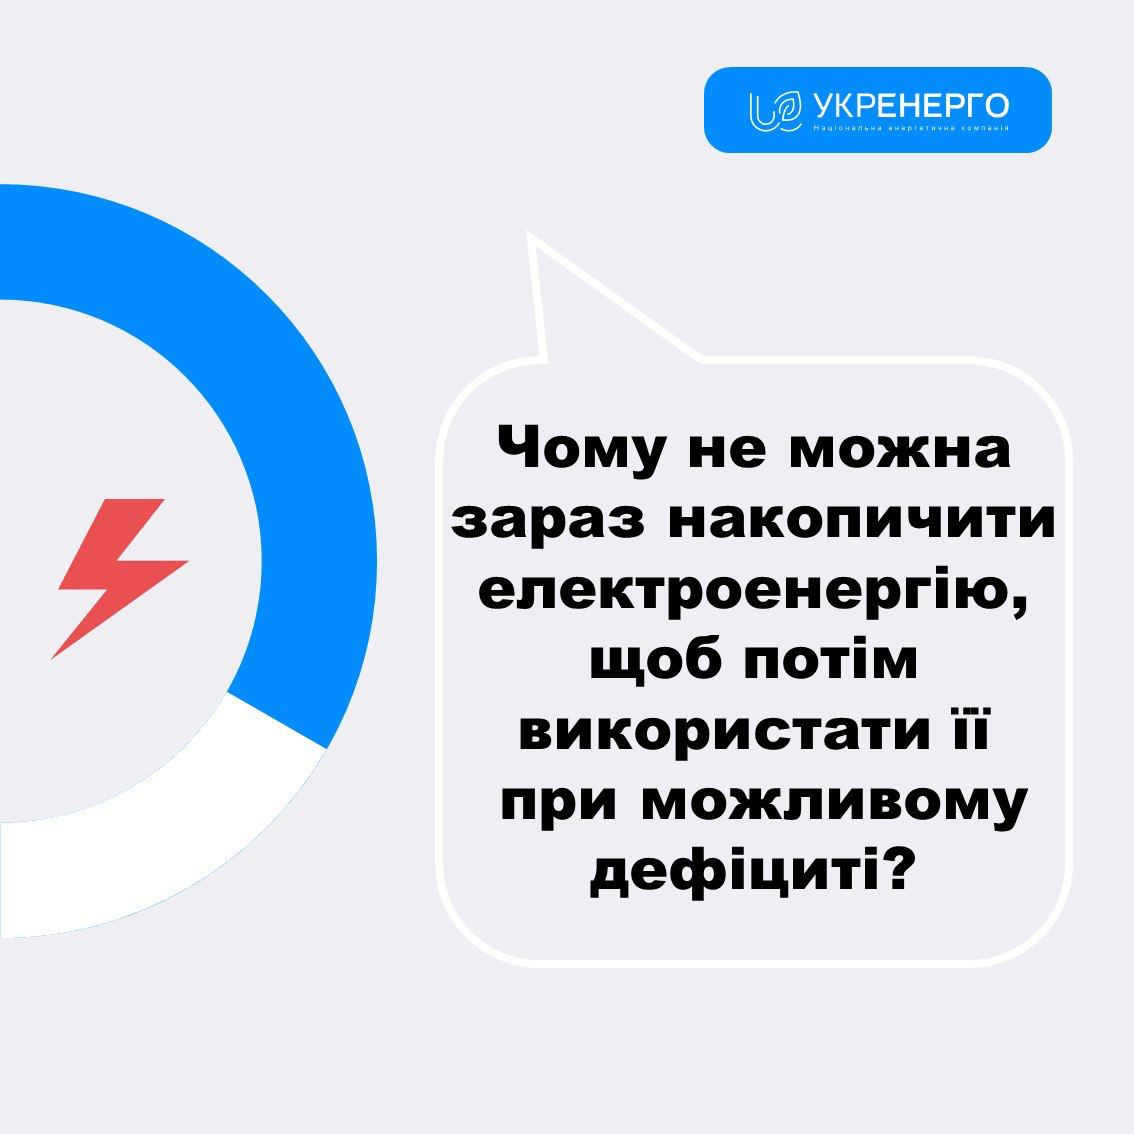 В Укрэнерго заявили, что не смогут за лето накопить электроэнергию